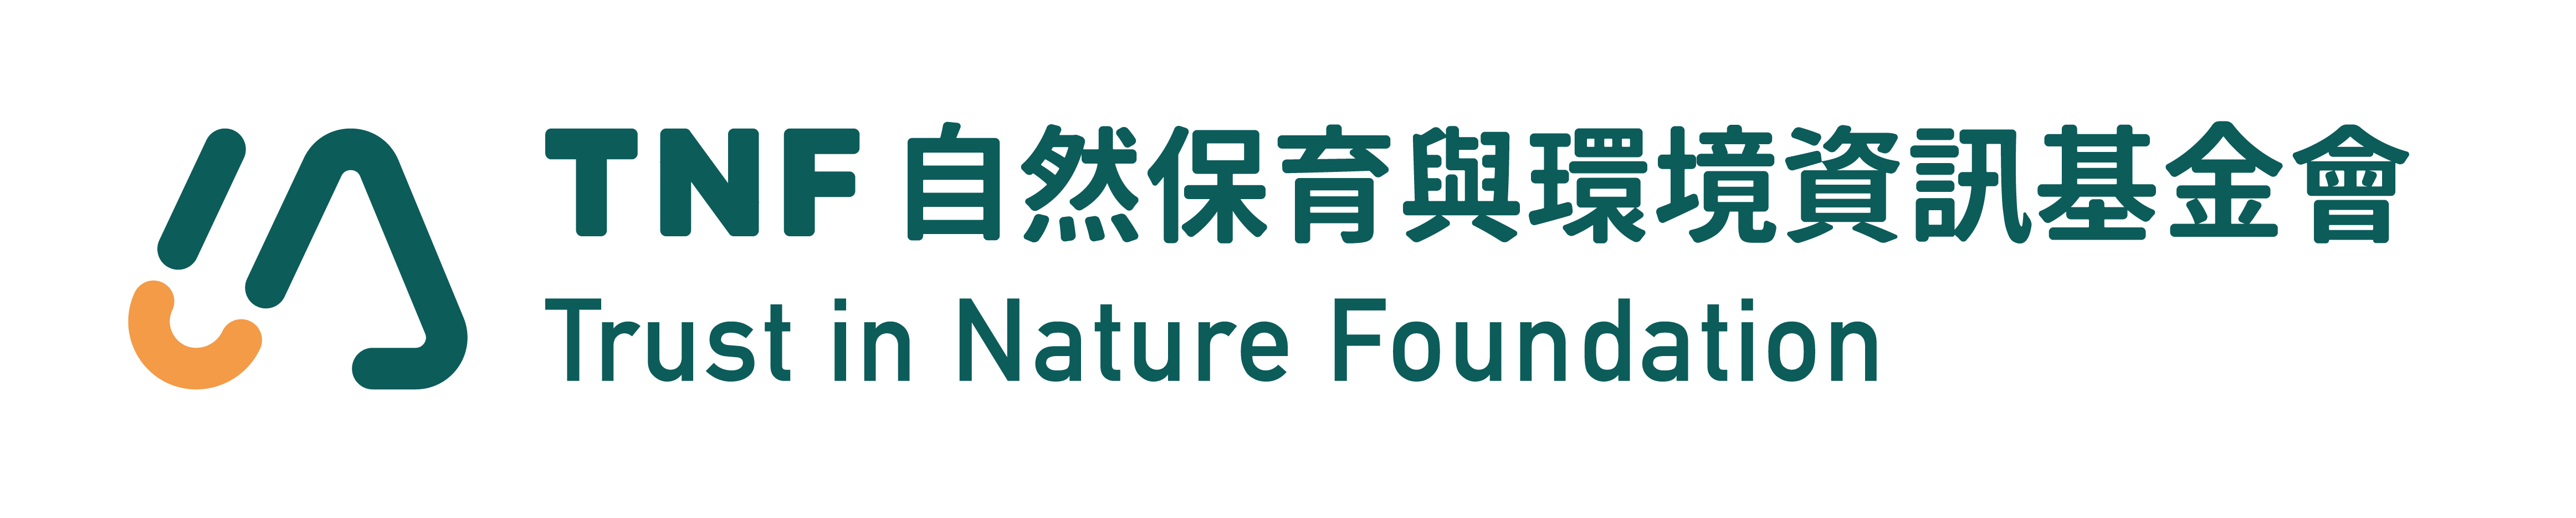 自然保育與環境資訊基金會